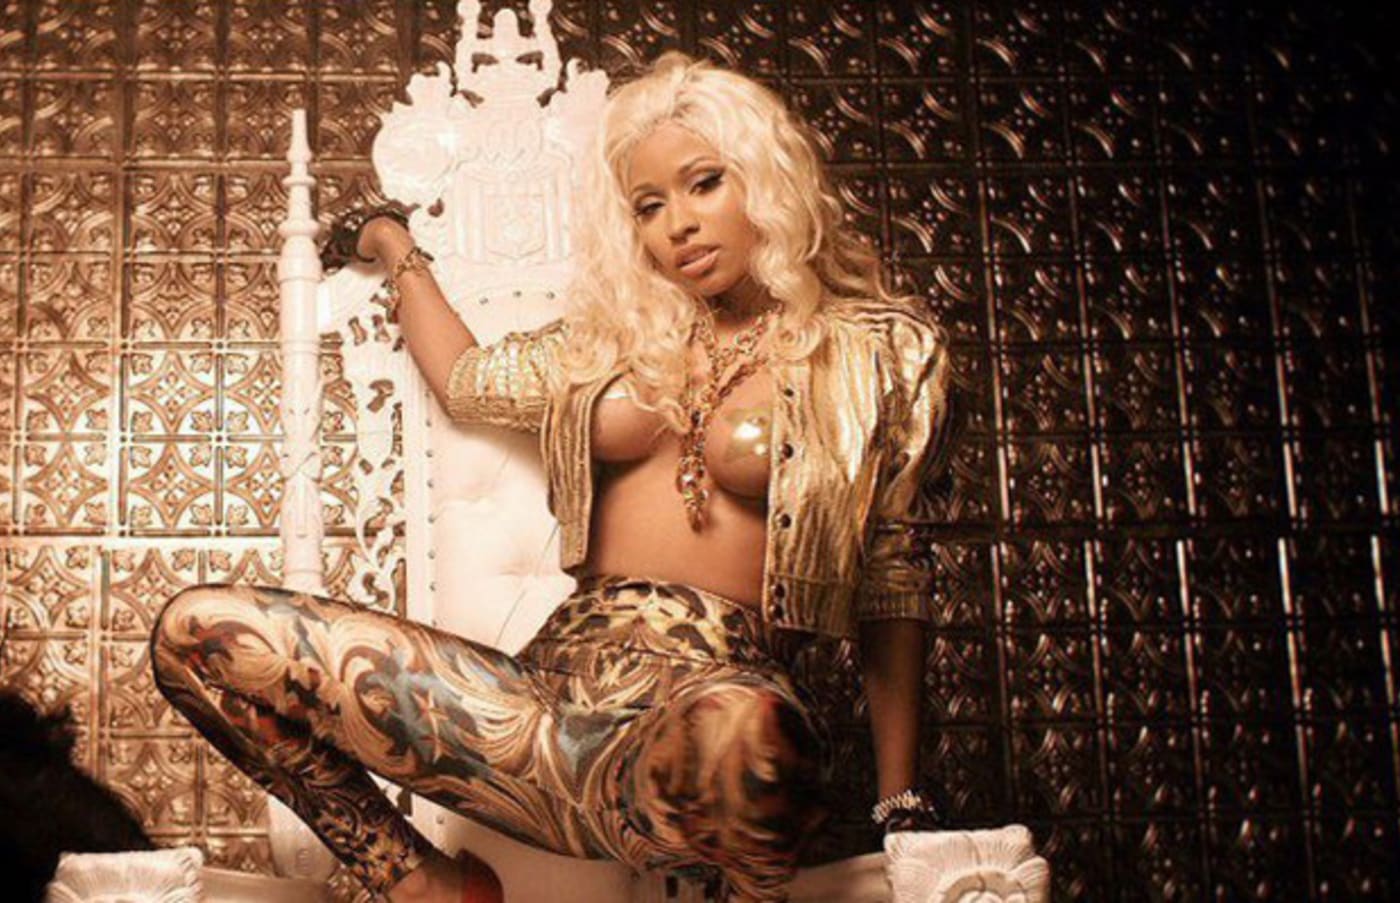 Nick Minji Xxx - The 25 Best Nicki Minaj Verses | Complex